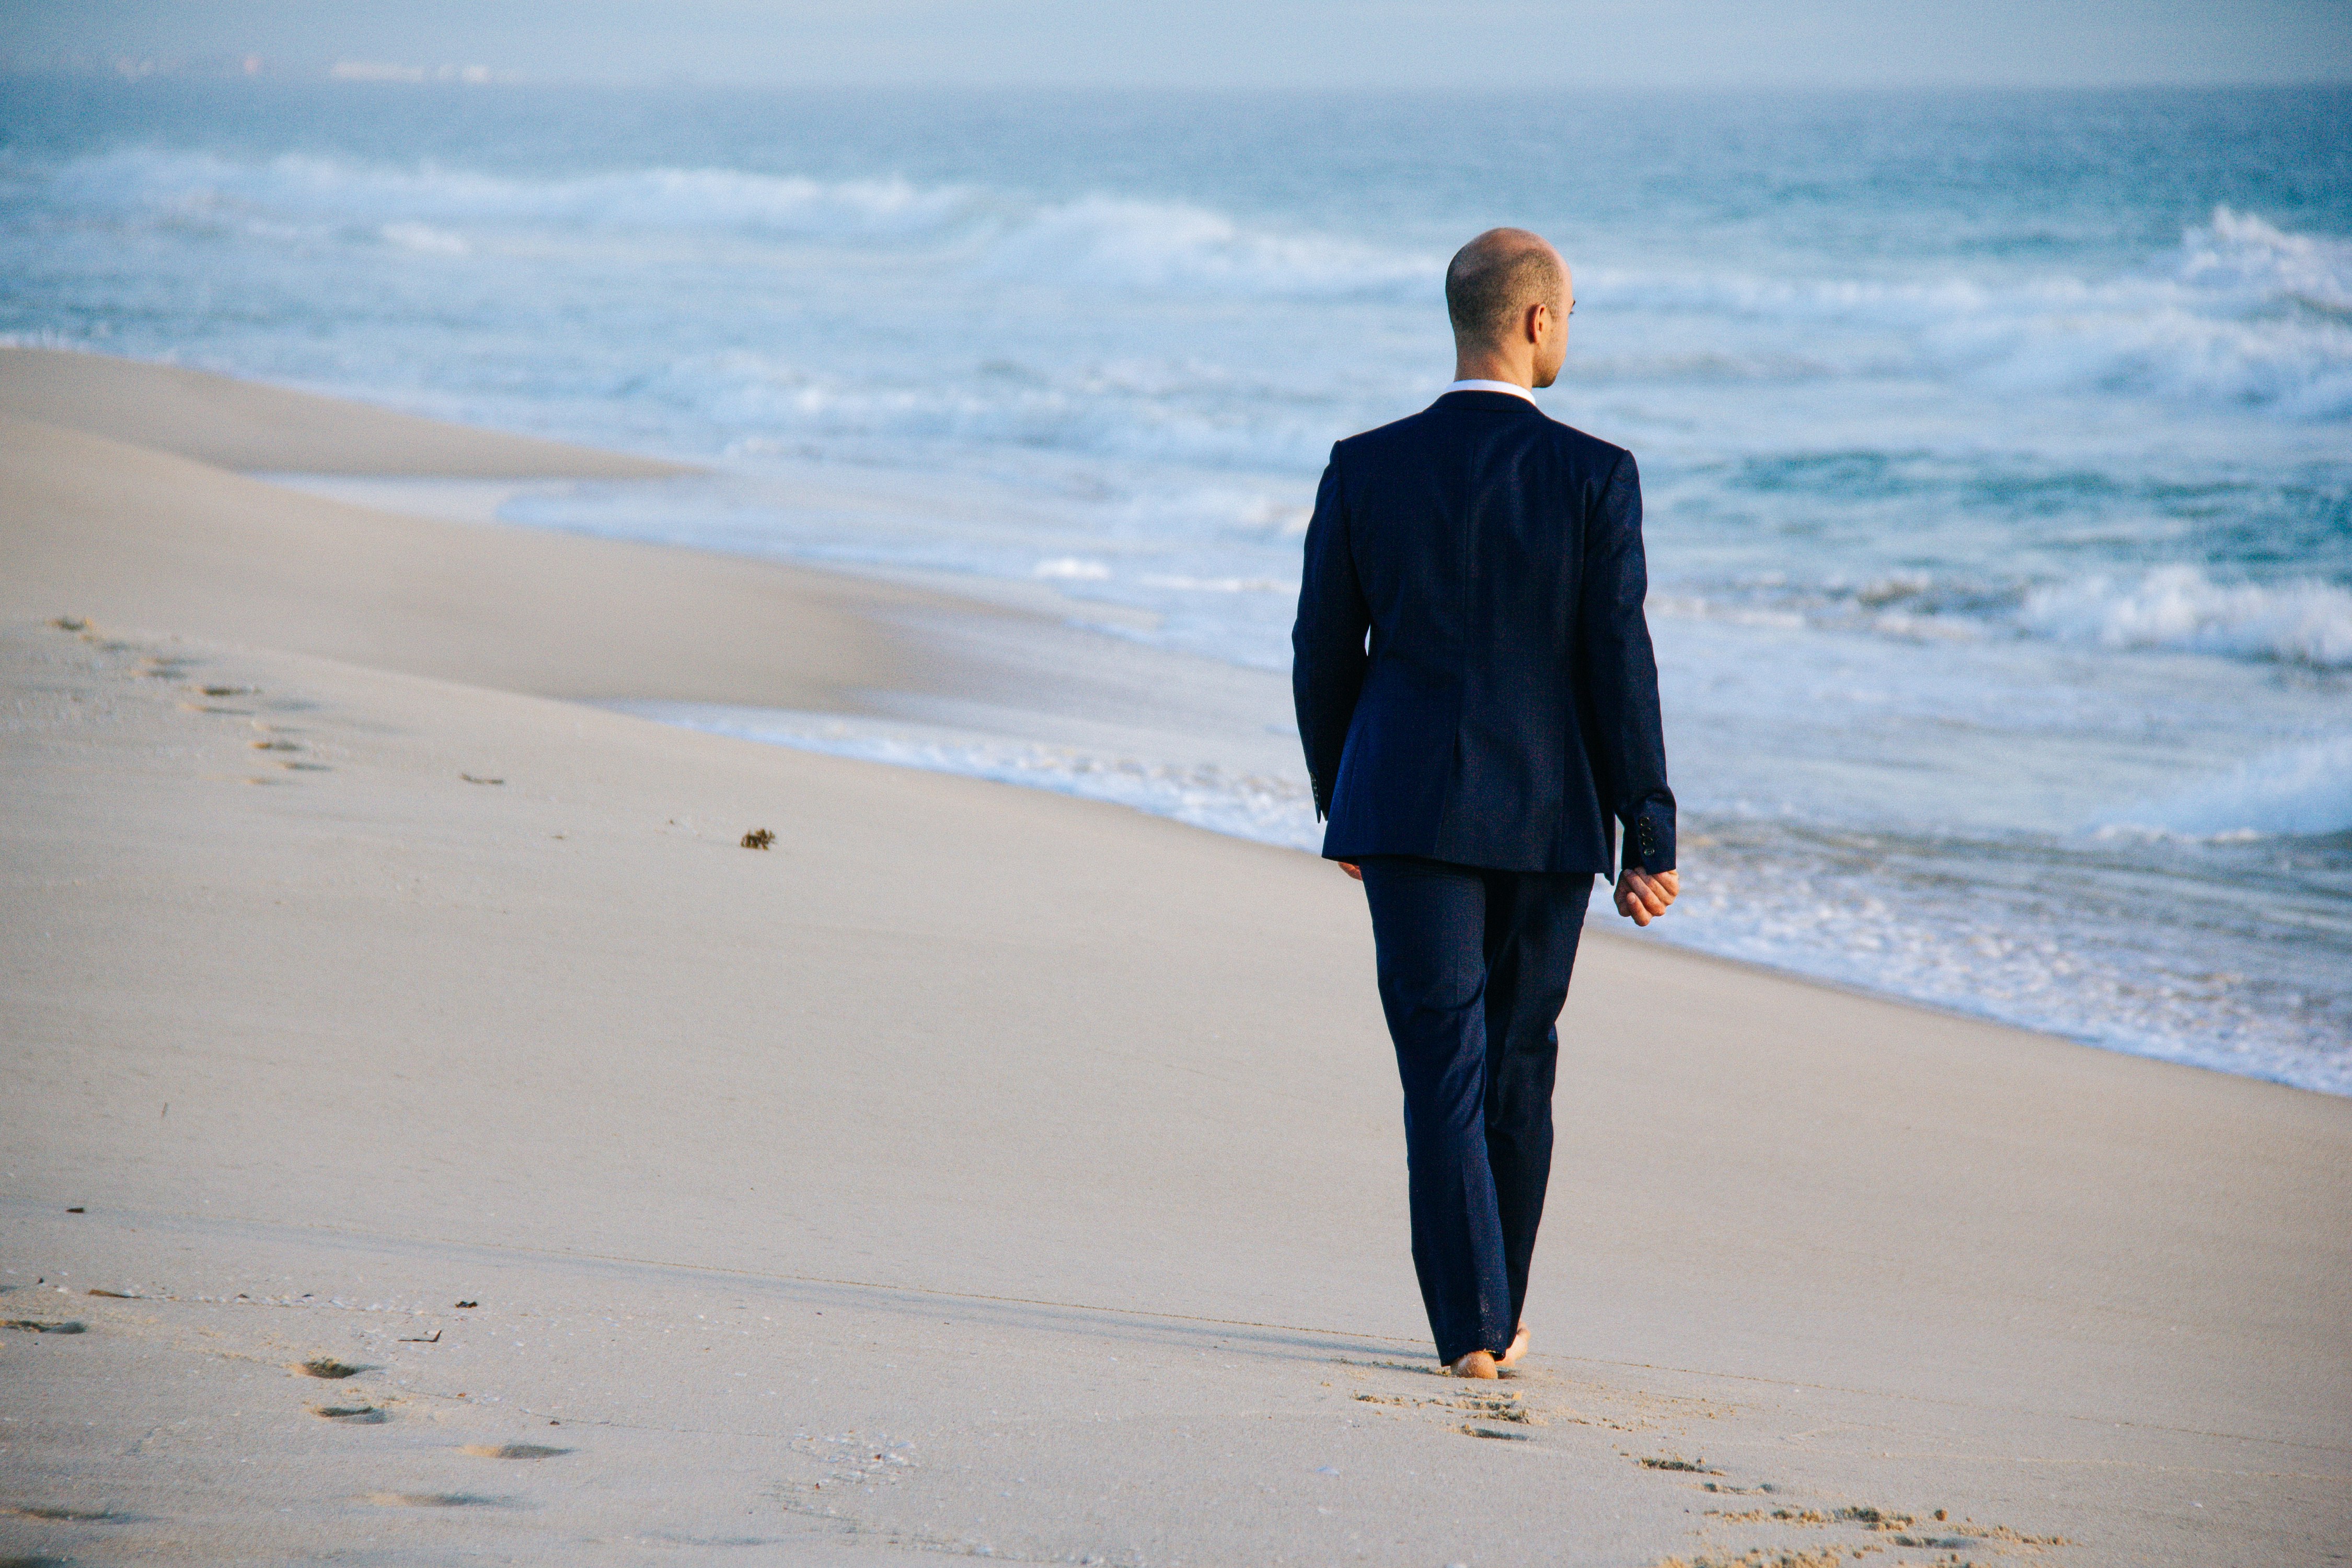 man walking on shore during daytime